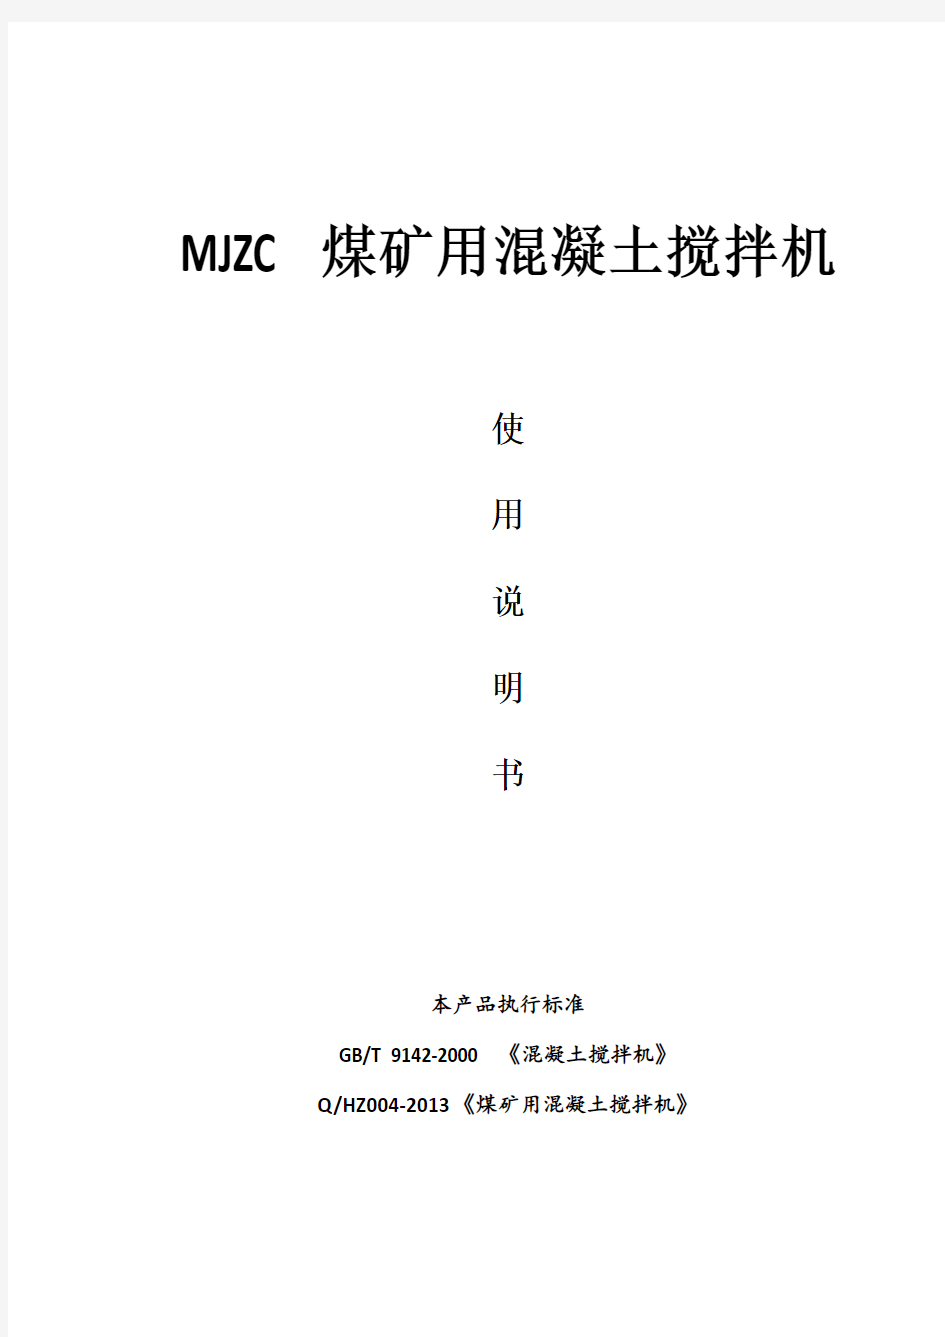 MJZC系列煤矿用混凝土搅拌机说明书